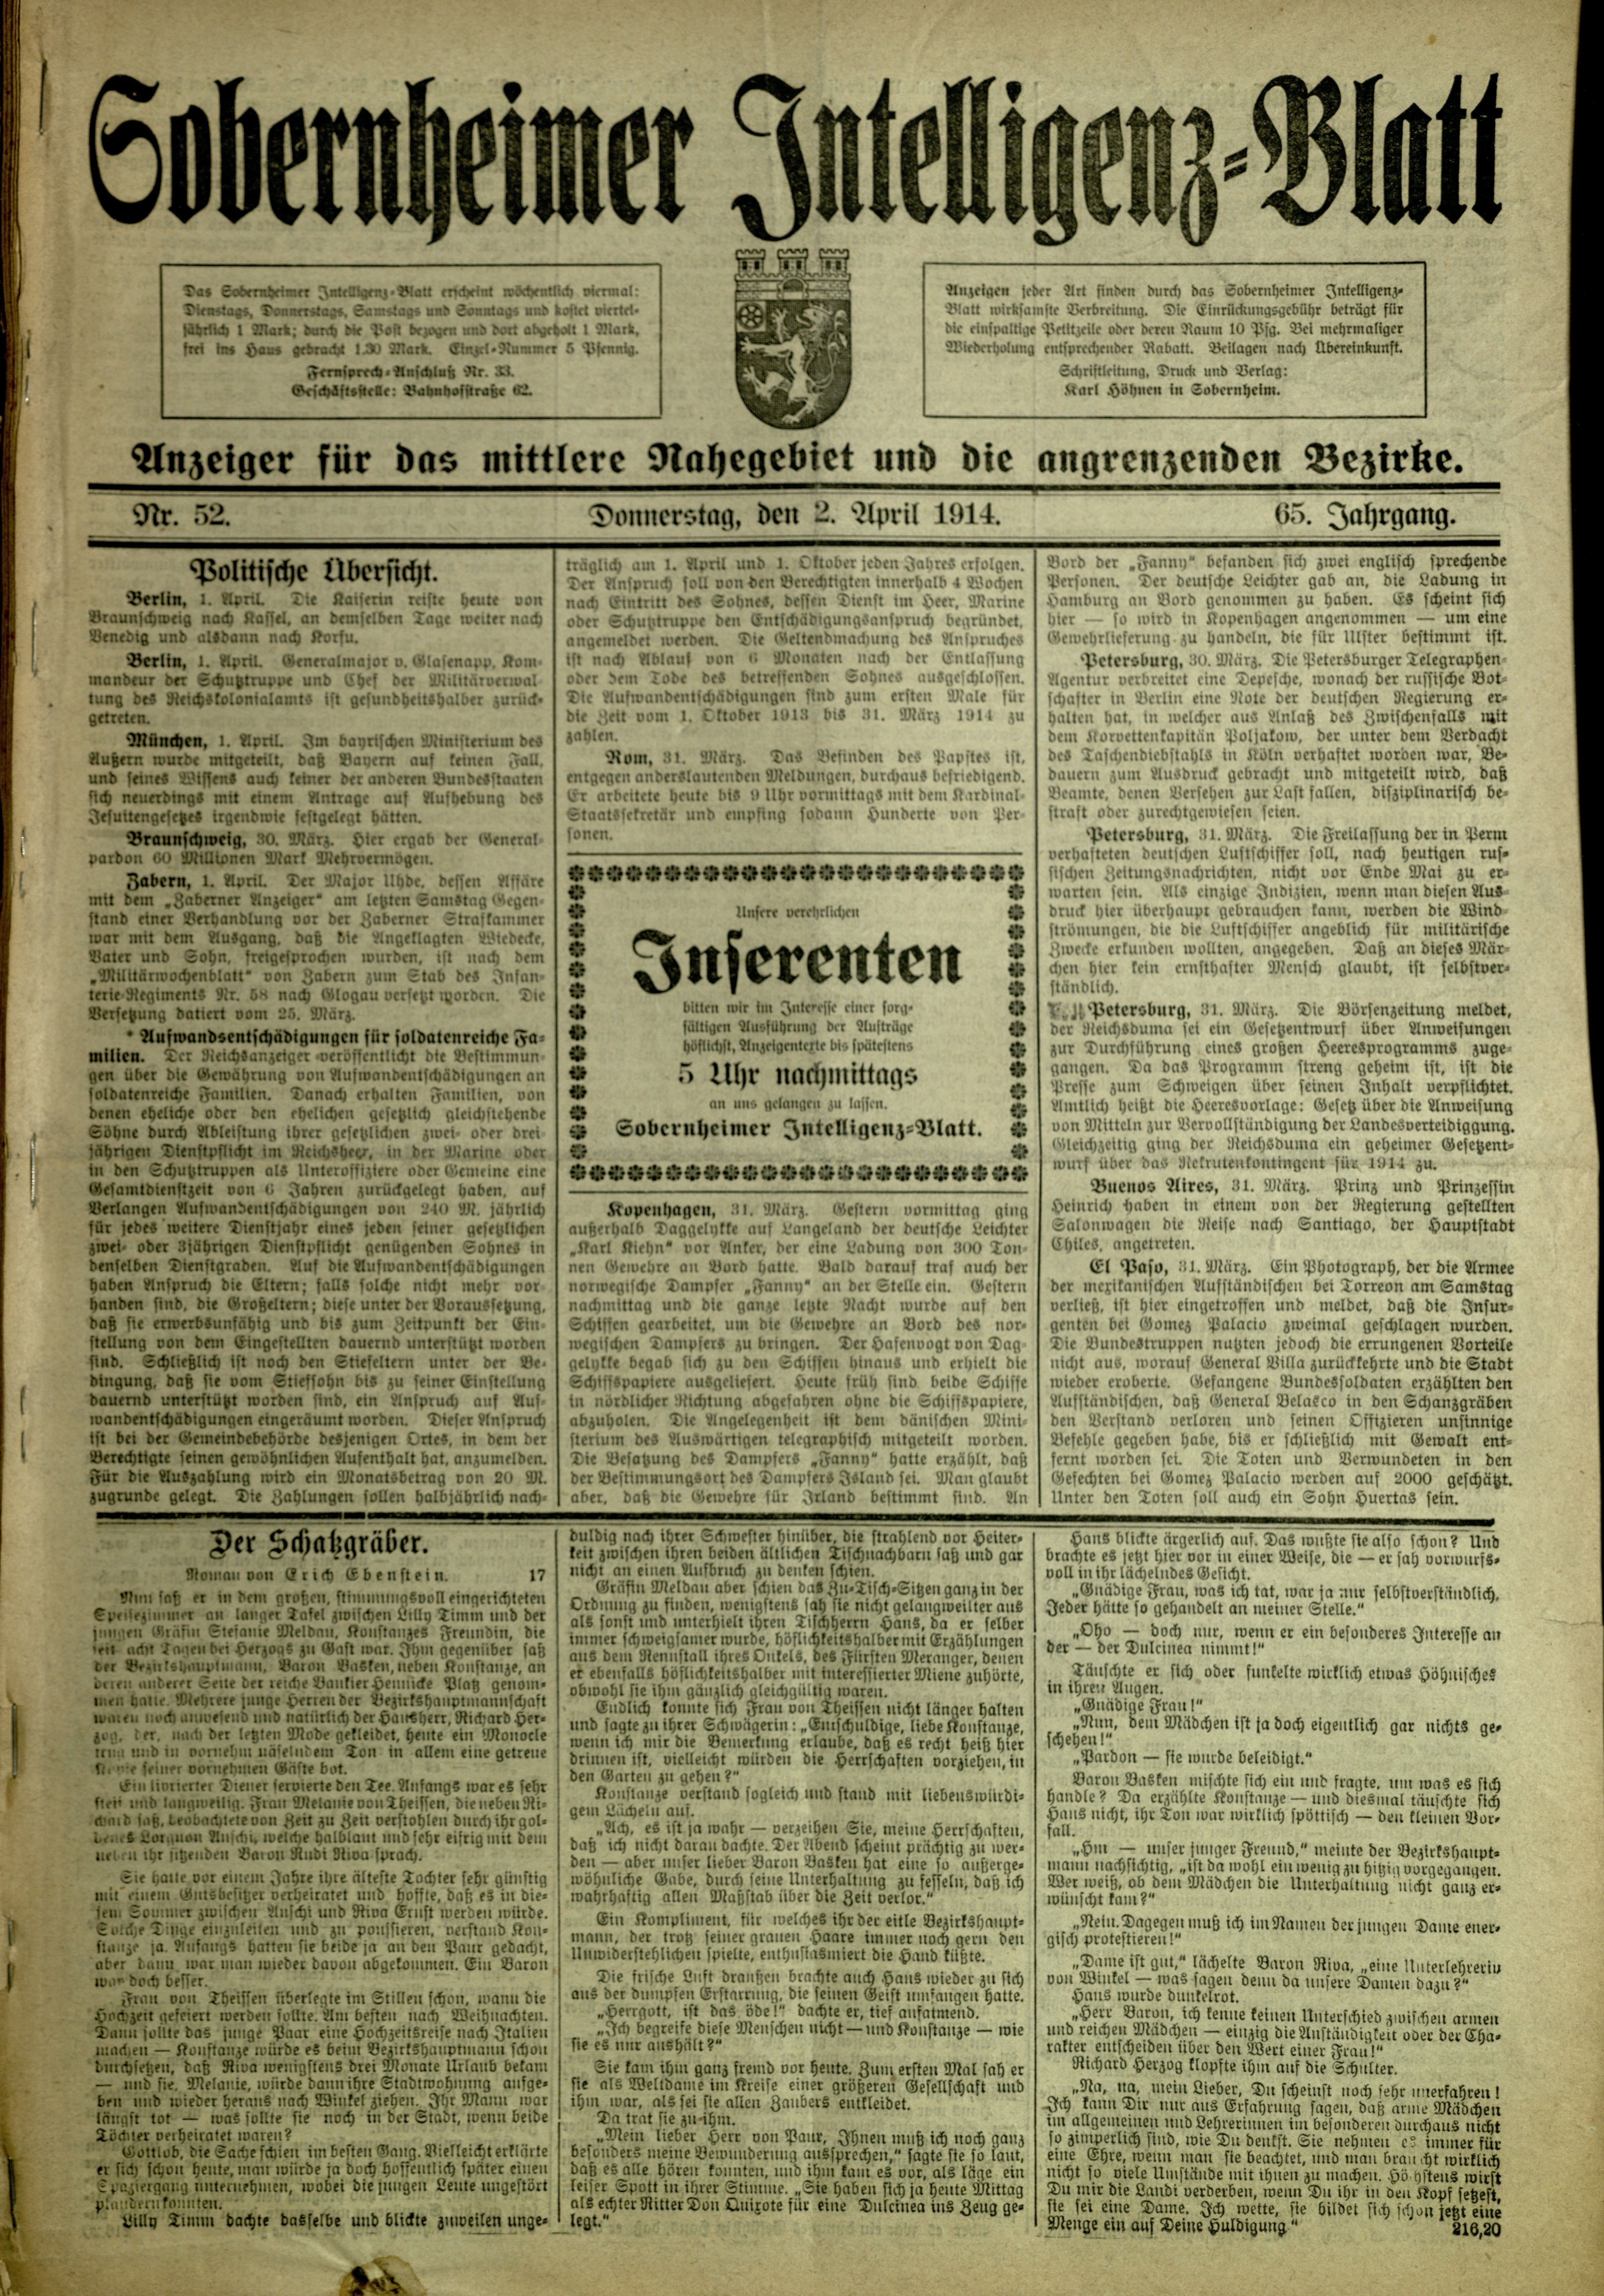 Zeitung: Sobernheimer Intelligenzblatt, April 1914 (Heimatmuseum Bad Sobernheim CC BY-NC-SA)